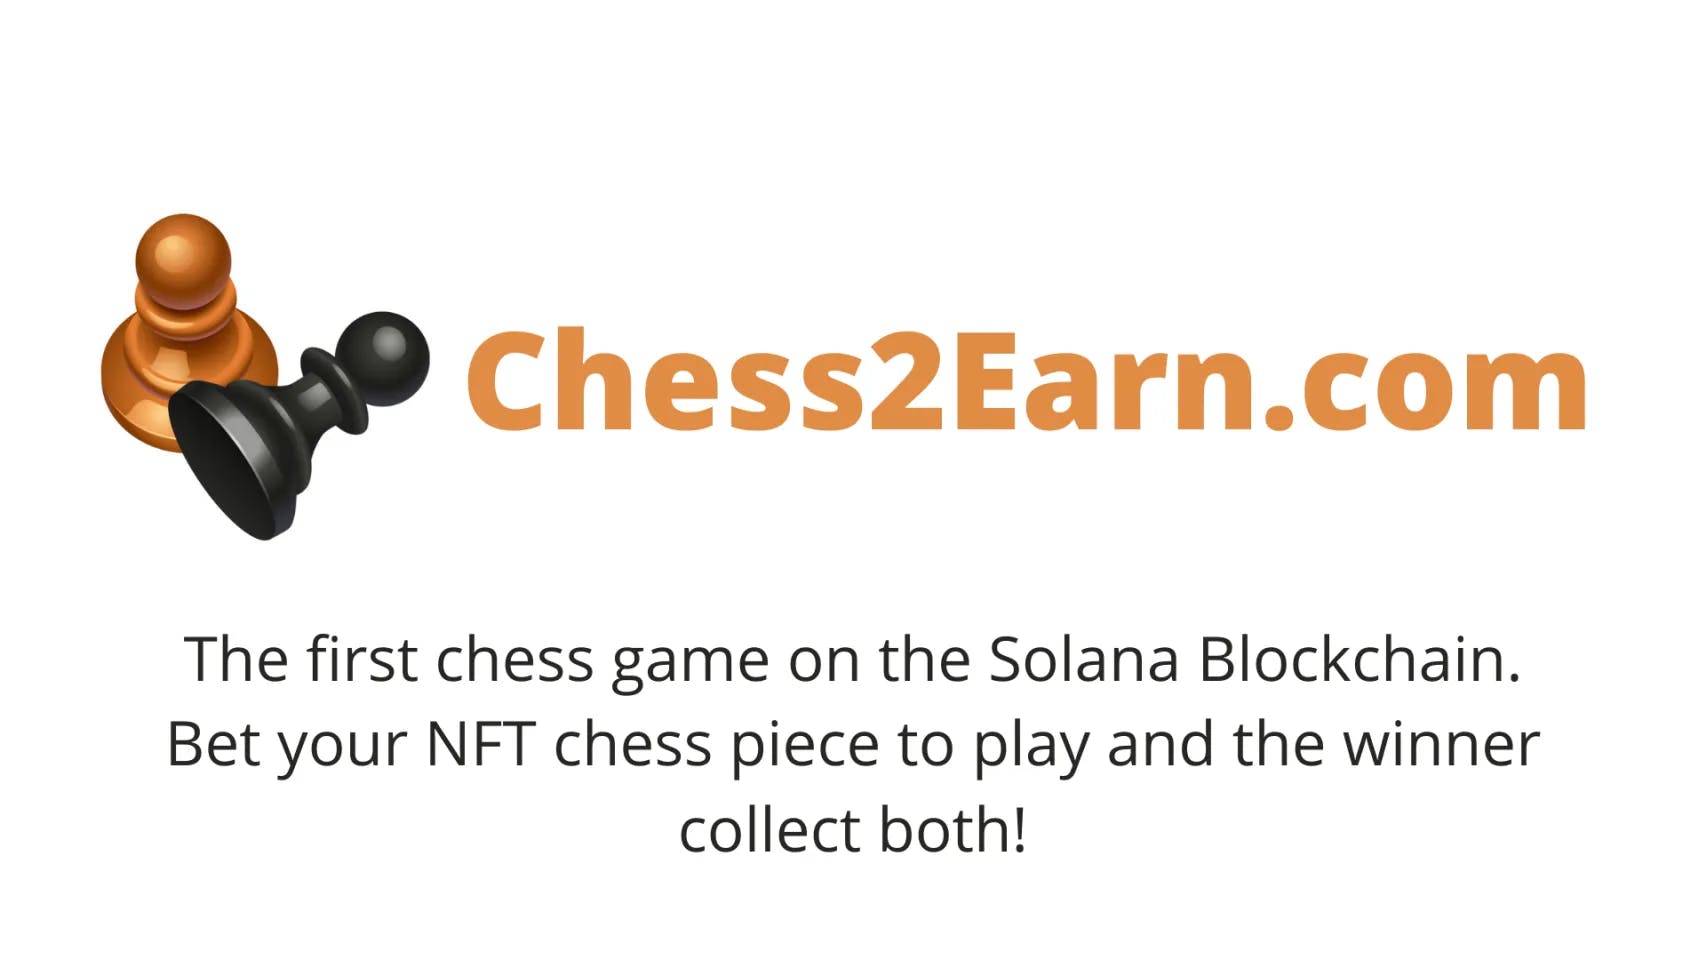 Chess2Earn.com